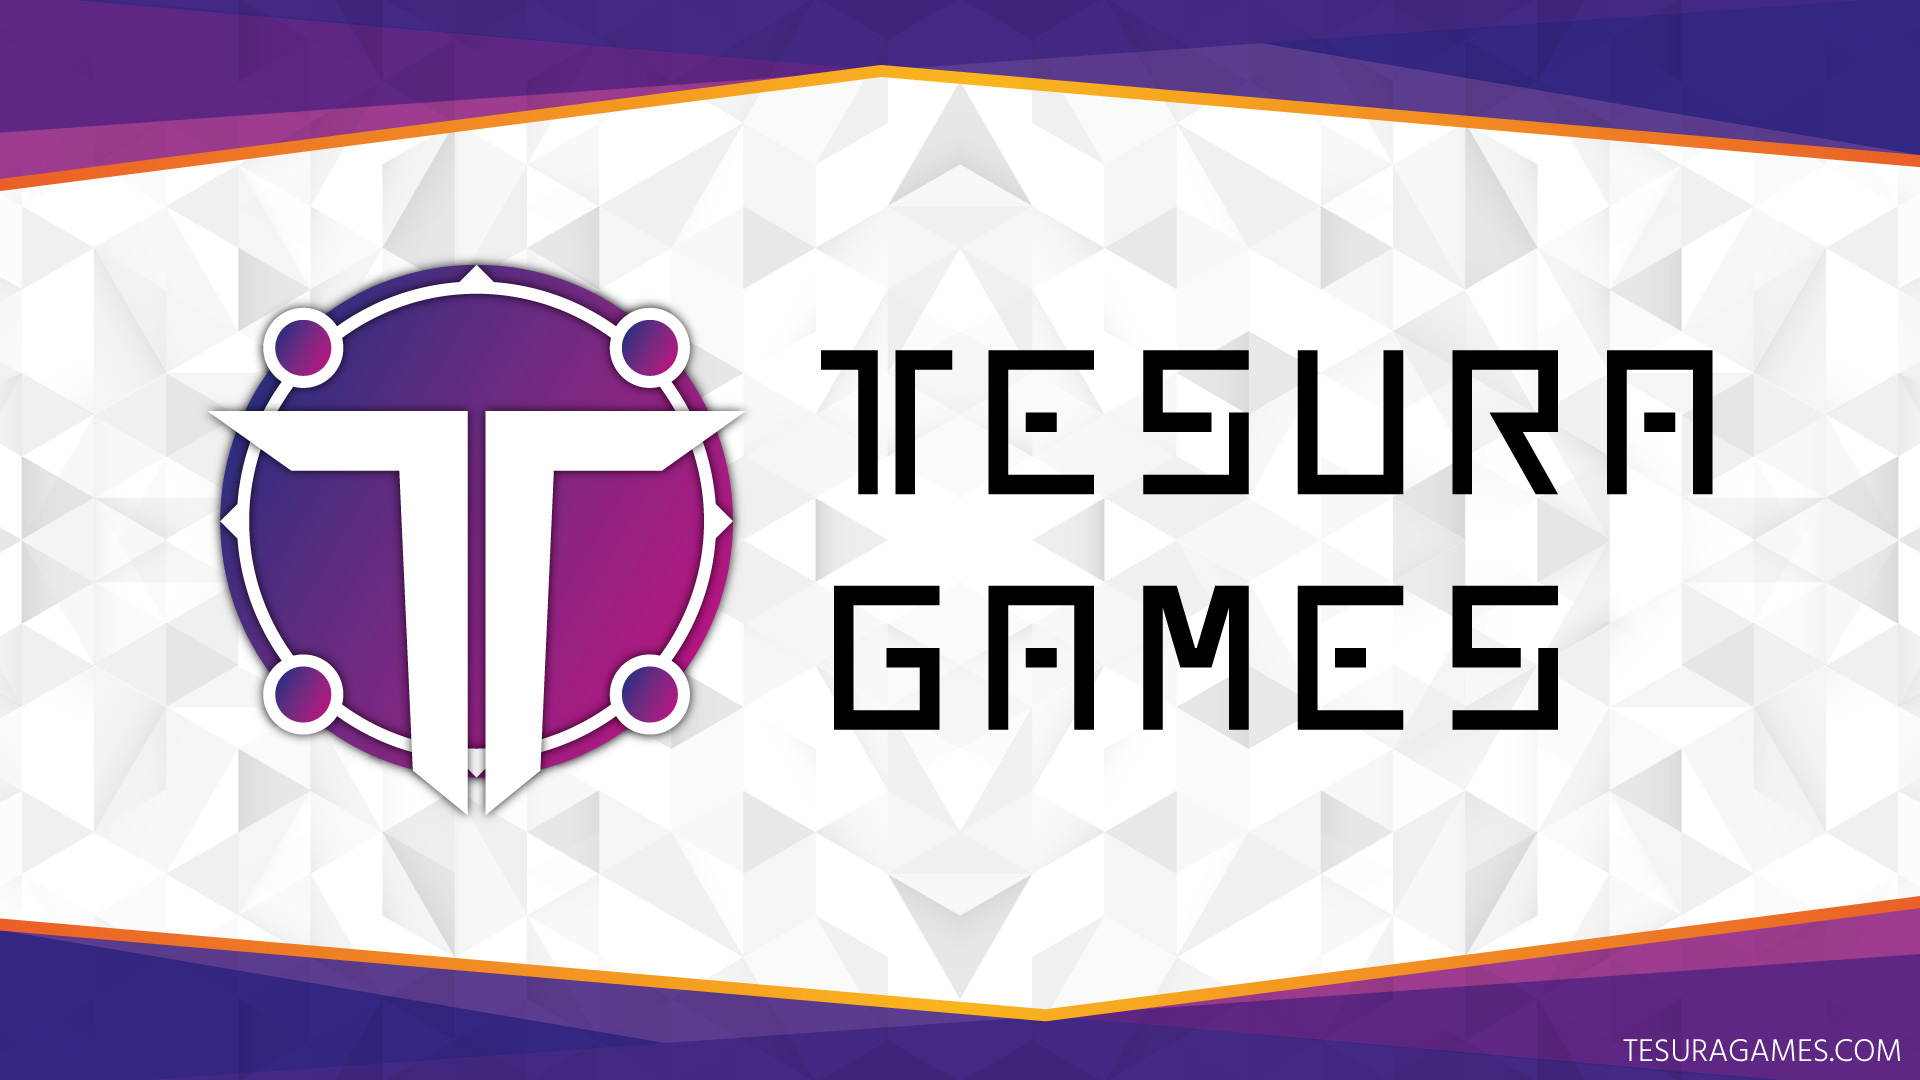 Tesura Games - Publisher y Distribuidor de Videojuegos